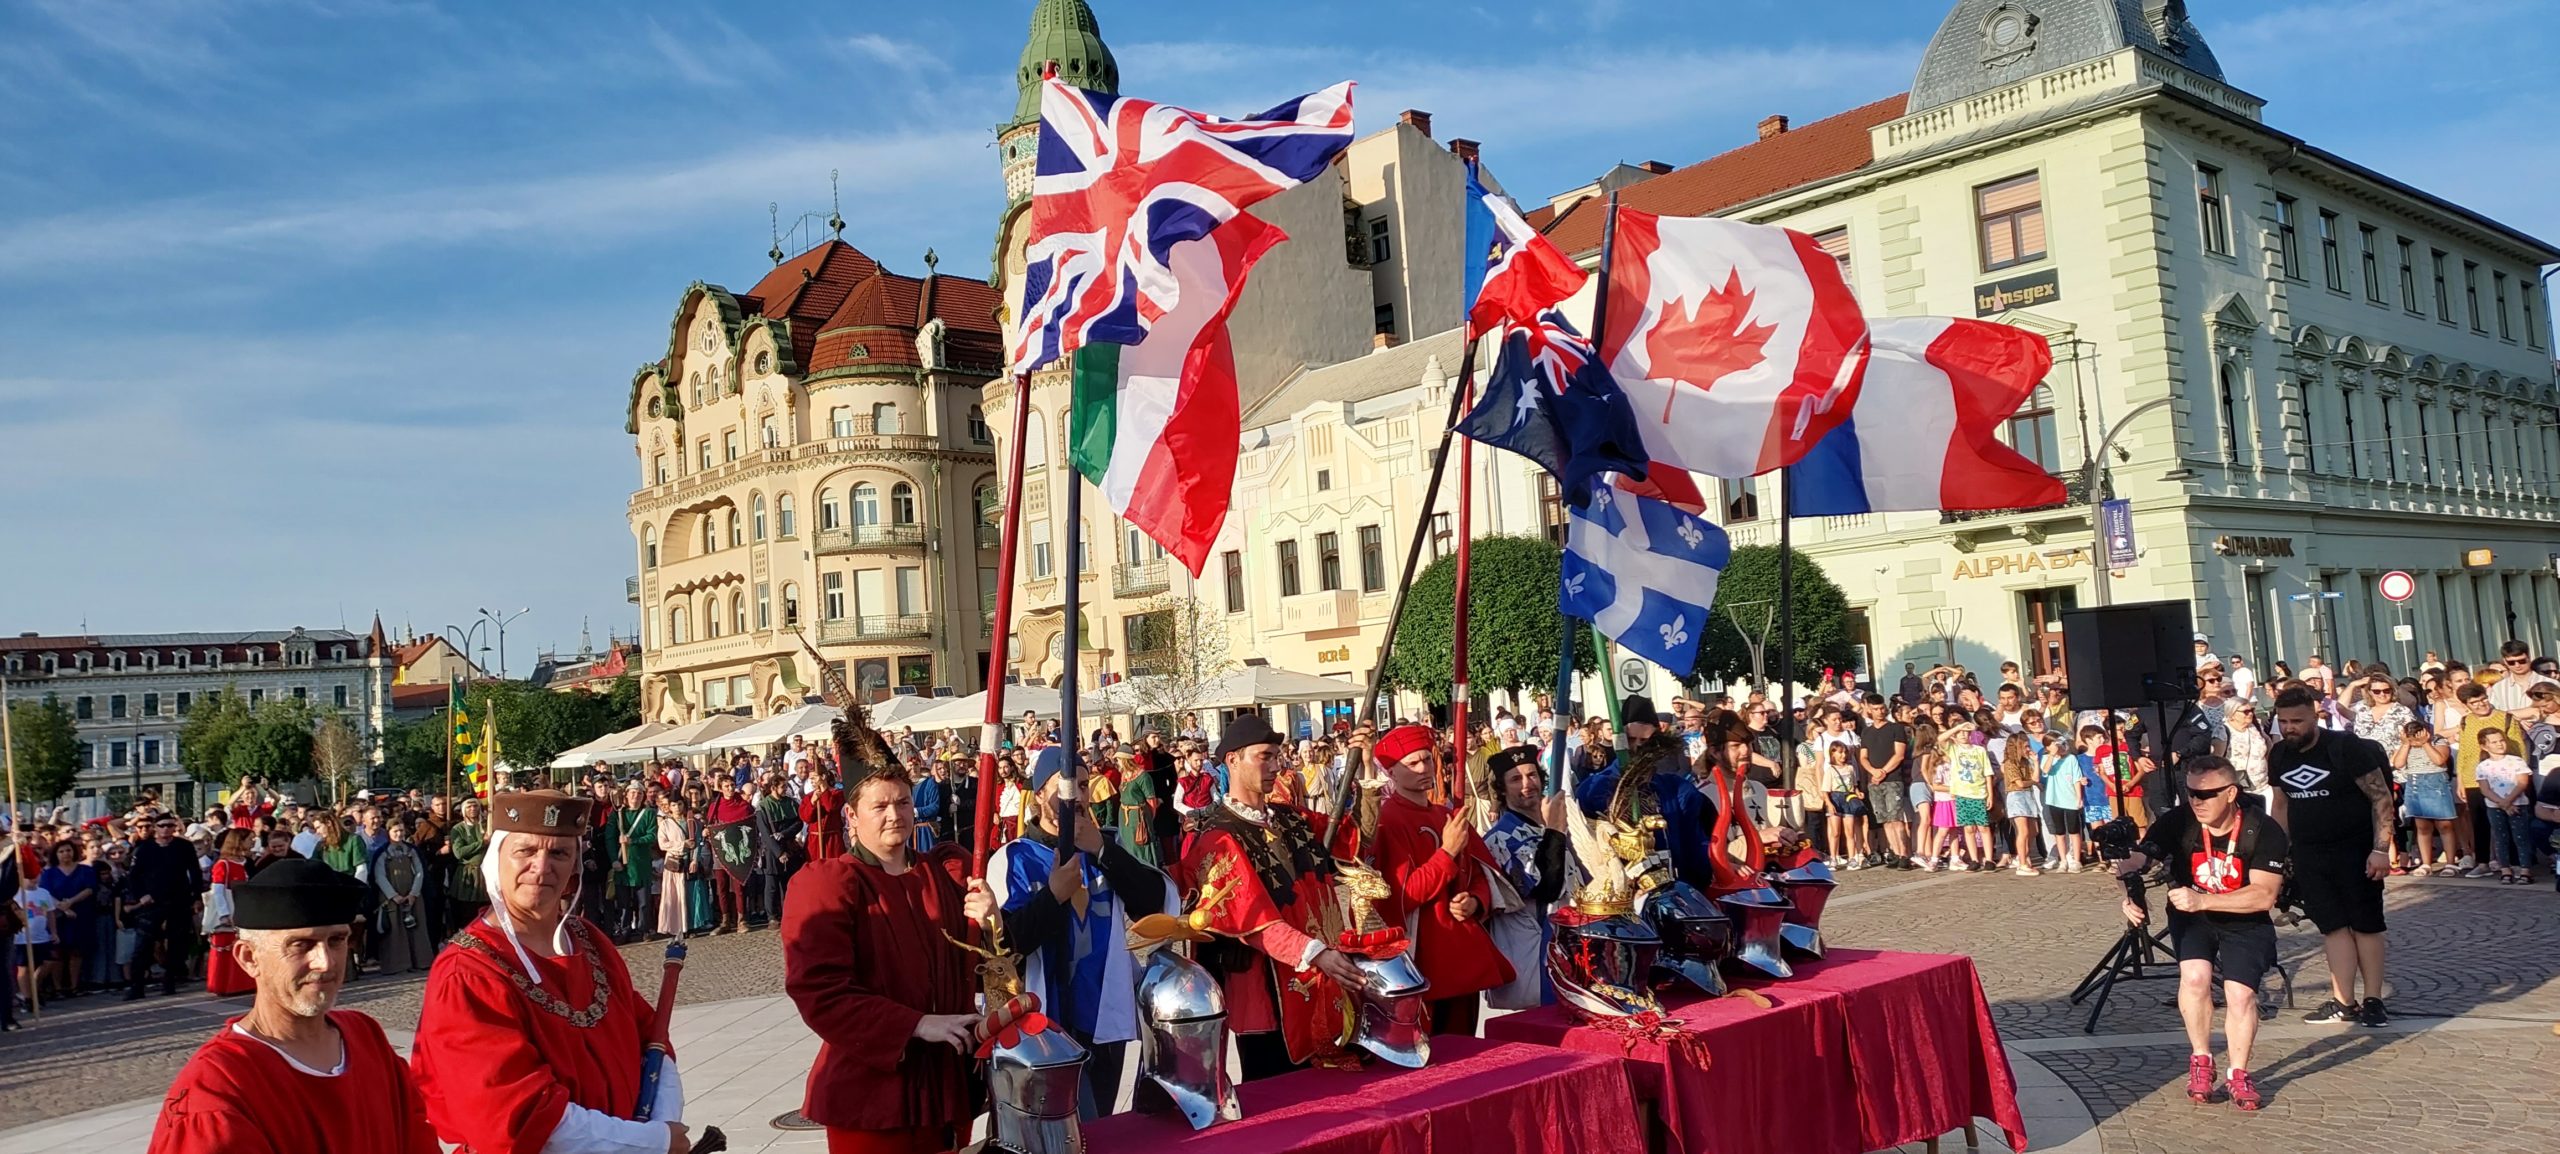 festivalul medieval oradea (16)